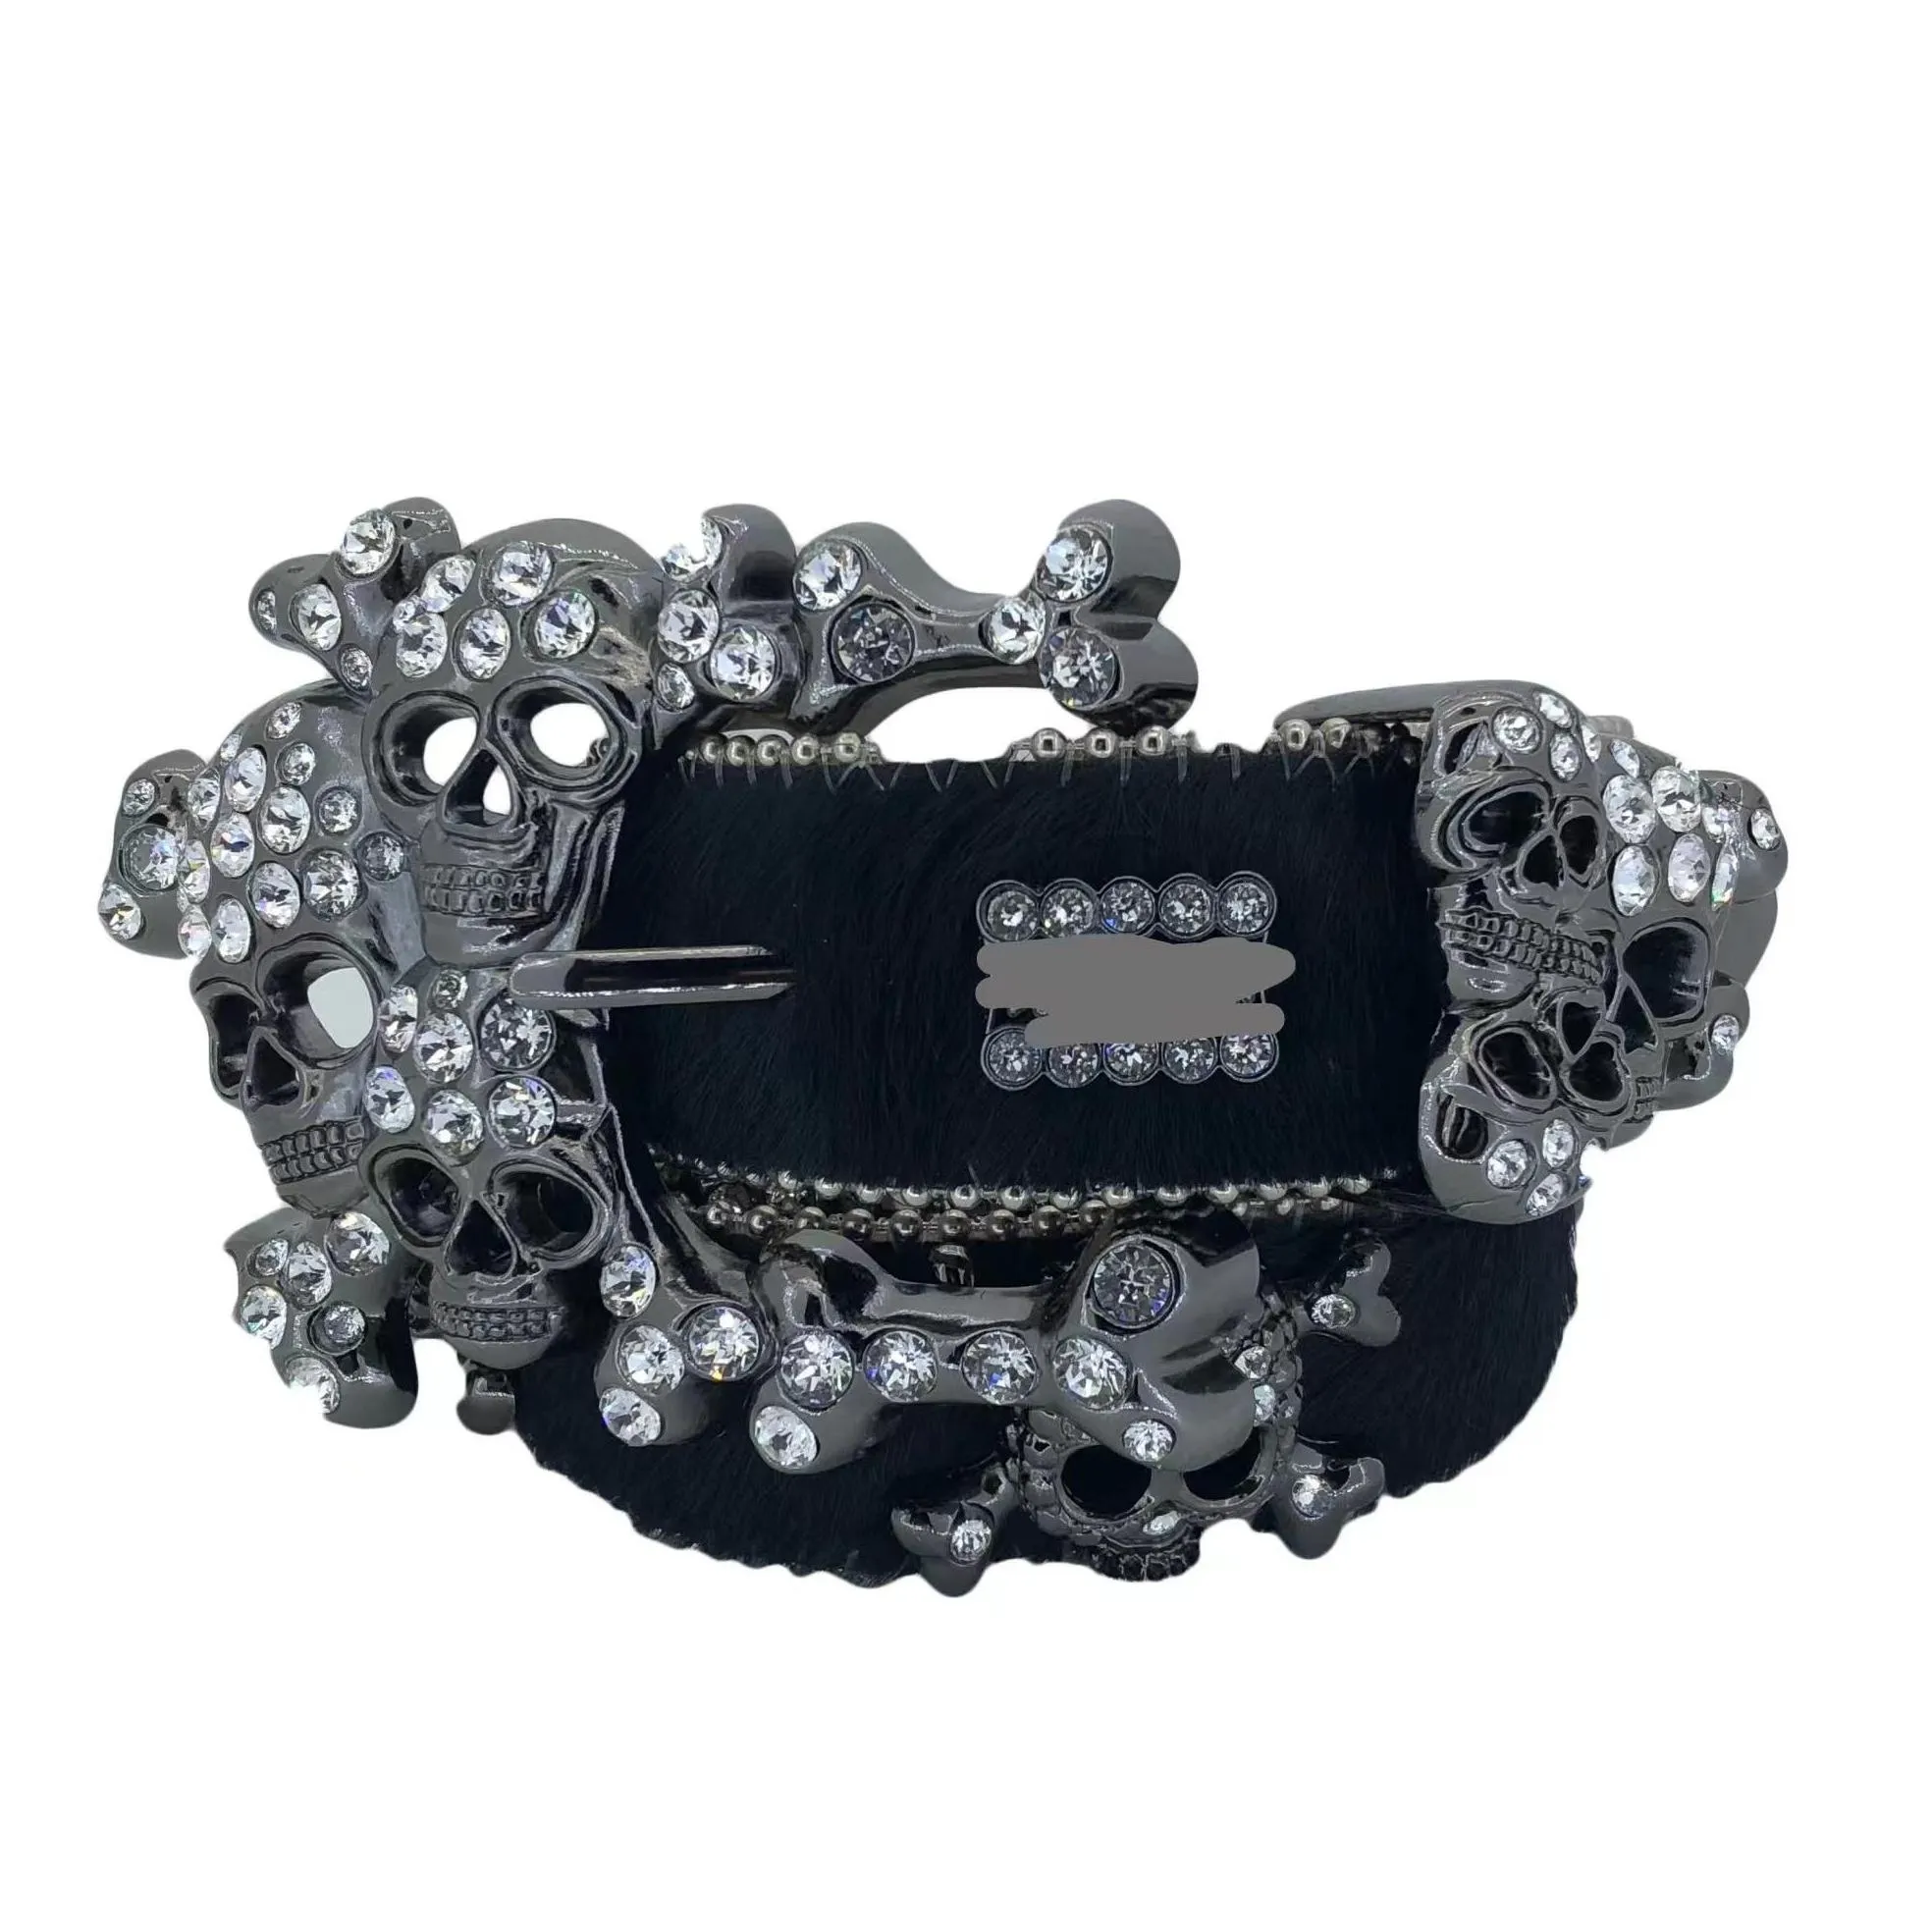 belts designer bb belt simon fashion for men women shiny diamond belt black on black blue white multicolour with bling rhinestones gift